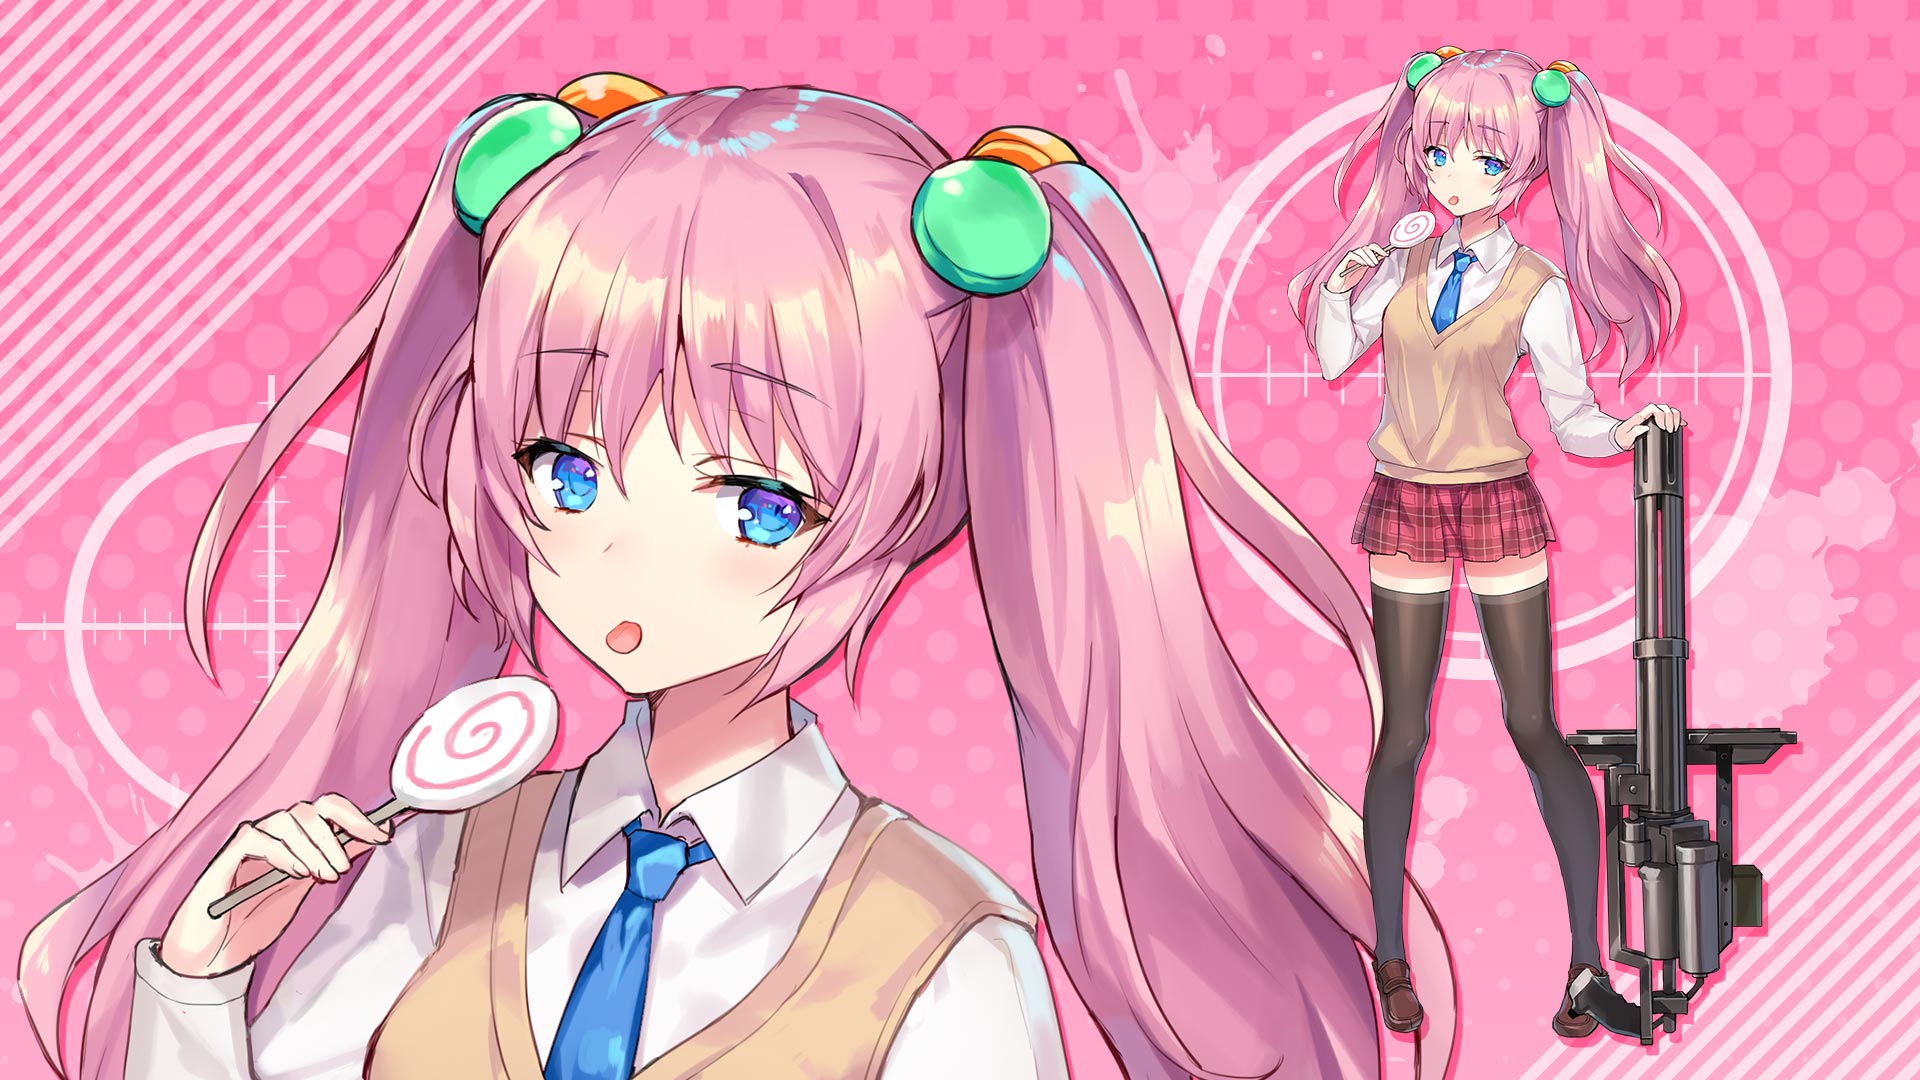 Anime girl with Lollipop